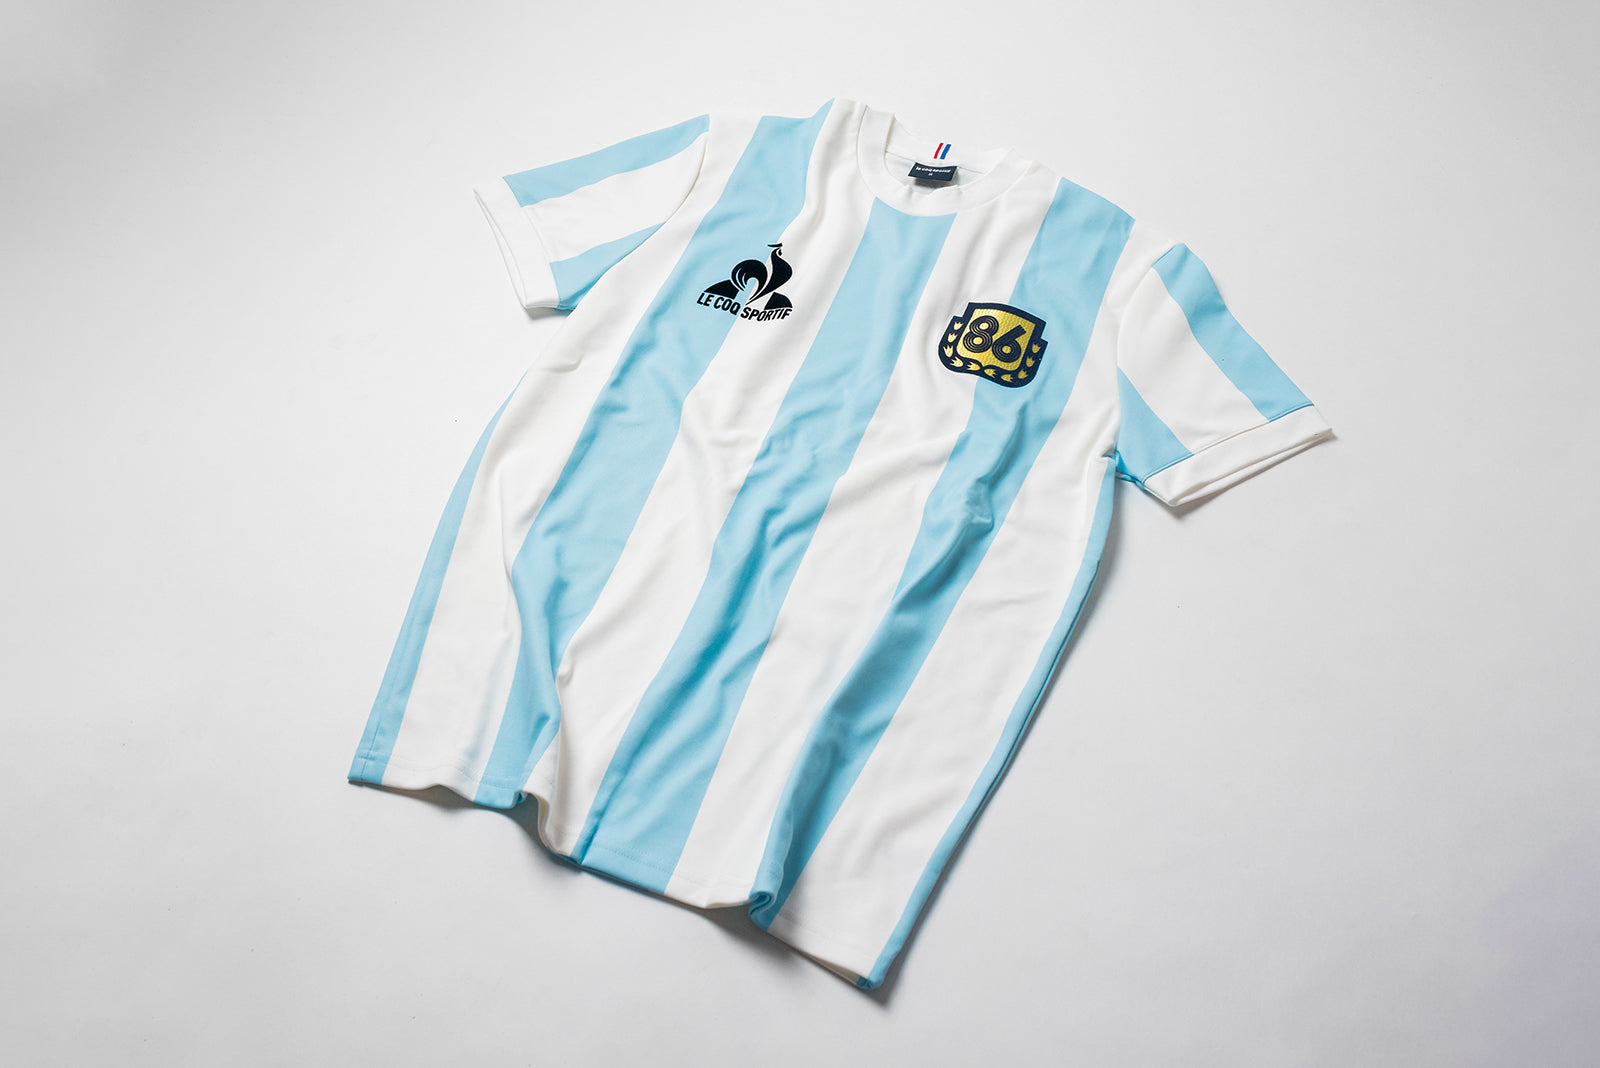 Le Coq Sportif Argentina 1986 – HANON